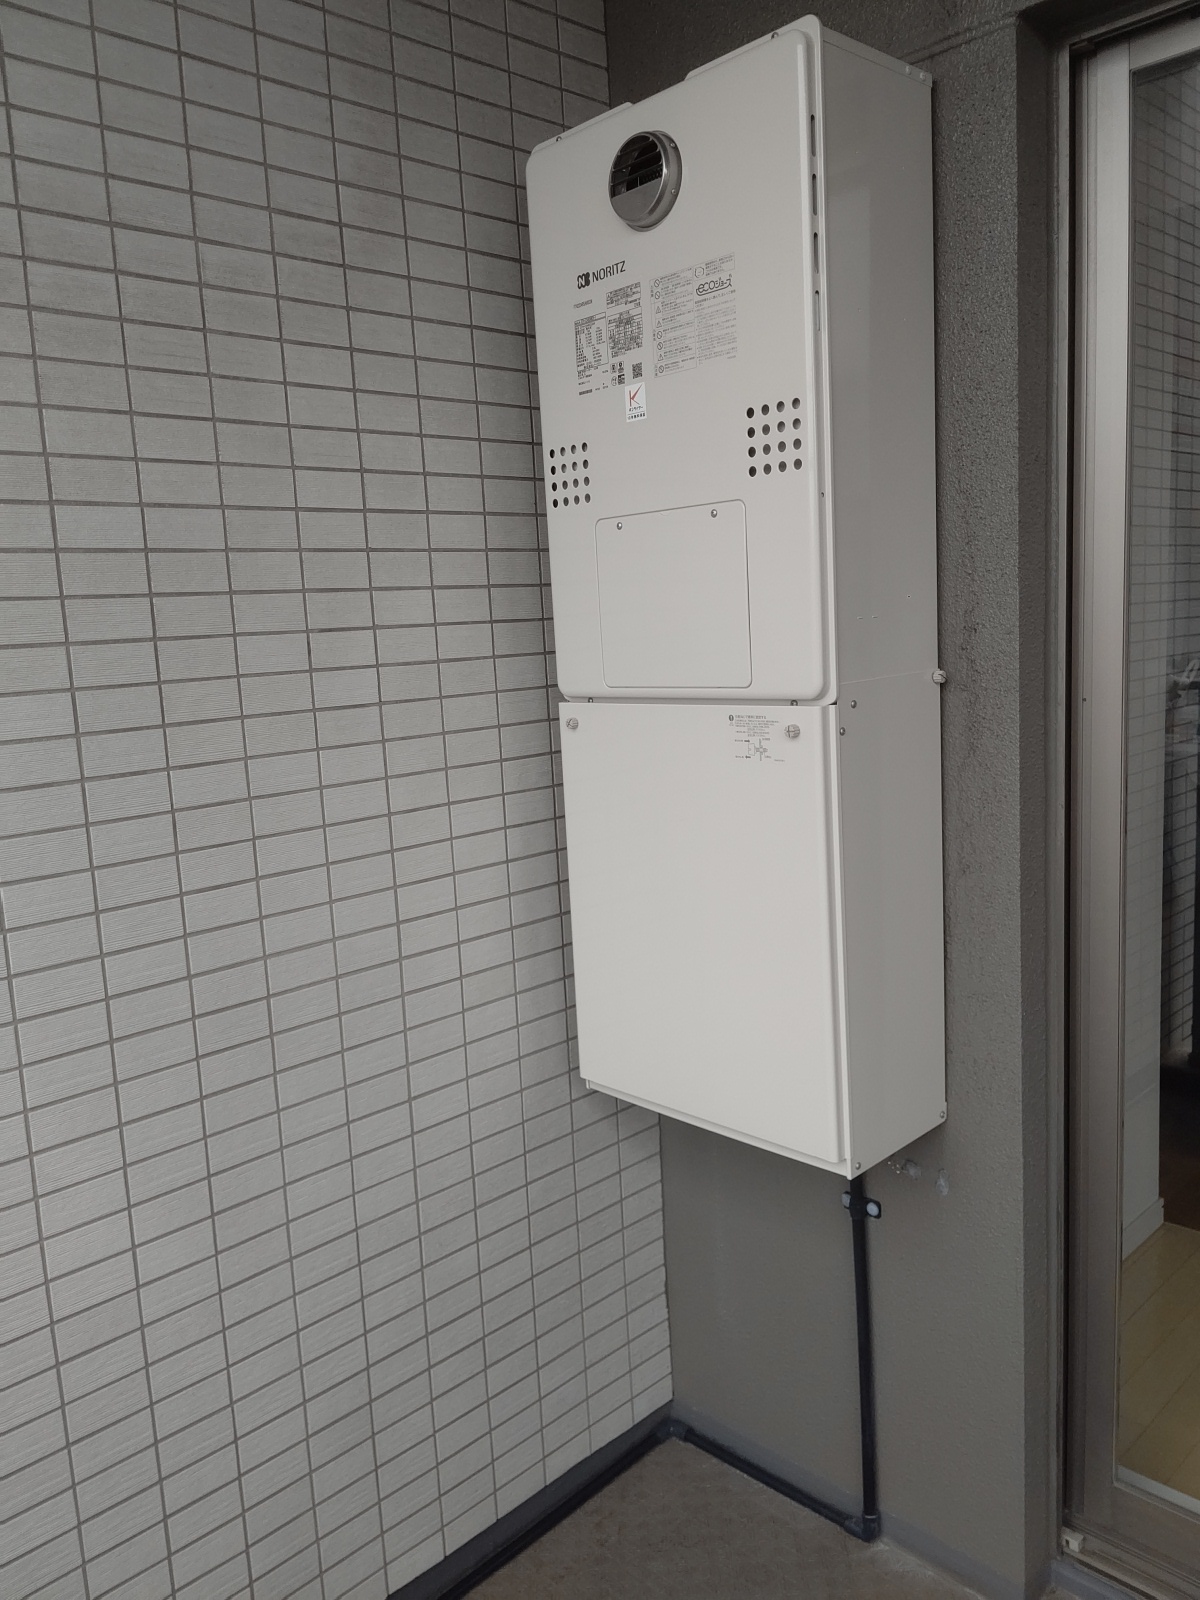 東京都大田区 T様 都市ガス ノーリツエコジョーズ GTH-C2460AW3H-1 BL 24号（フルオート）給湯暖房給湯器 交換工事 交換後